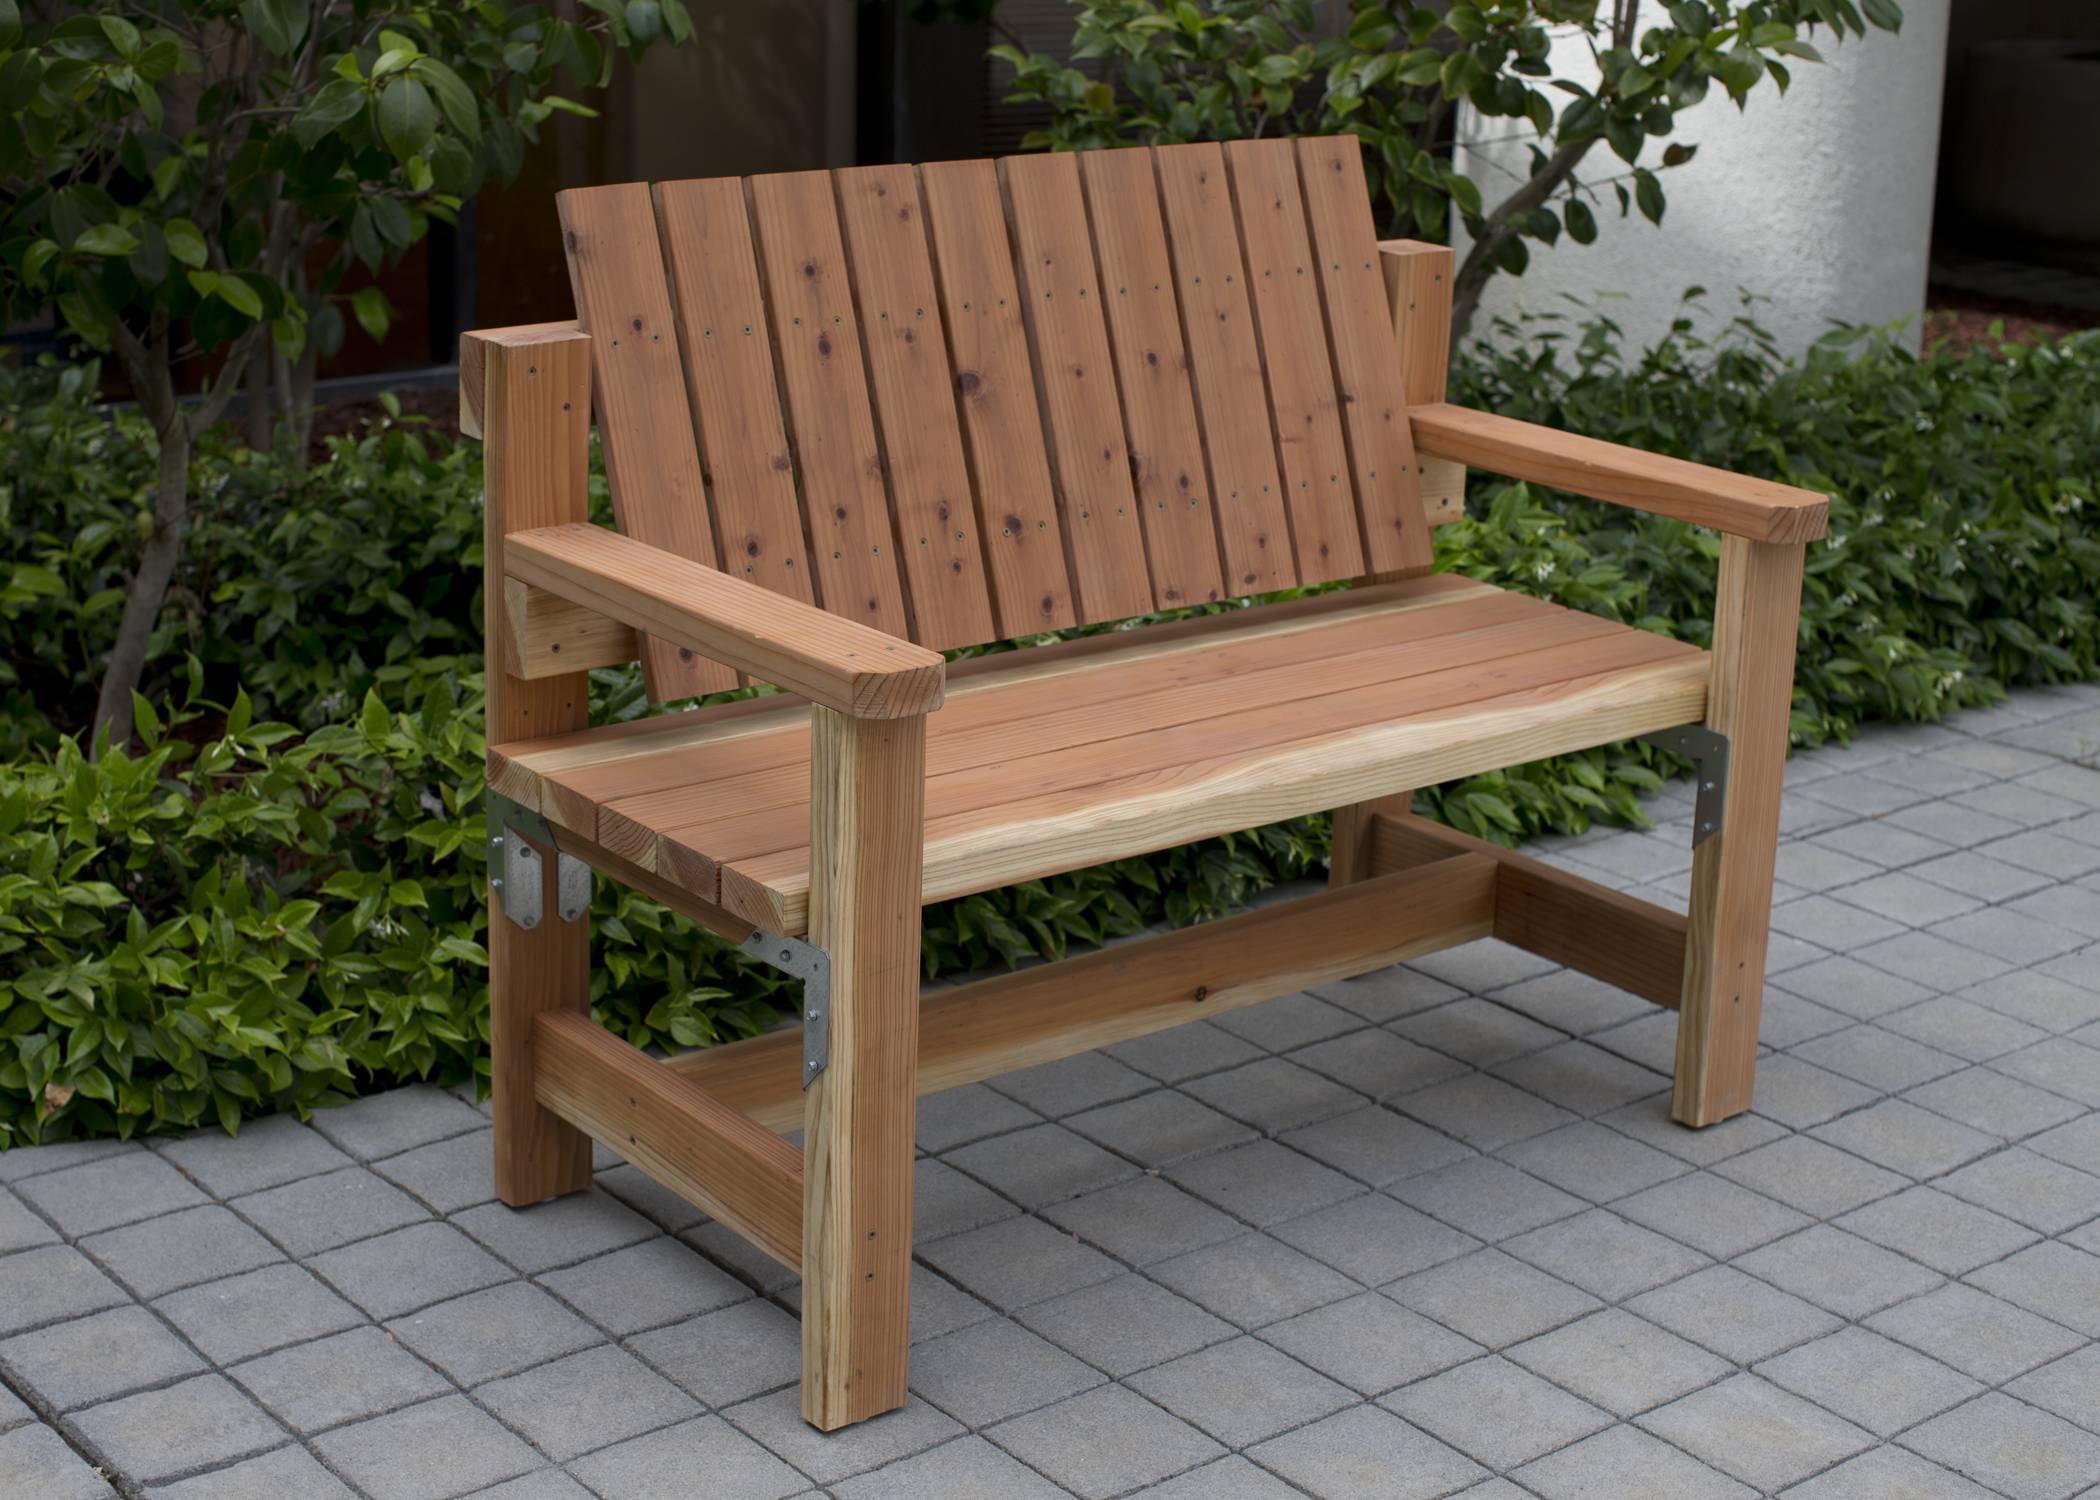 Best Diy Outdoor Bench Ideas